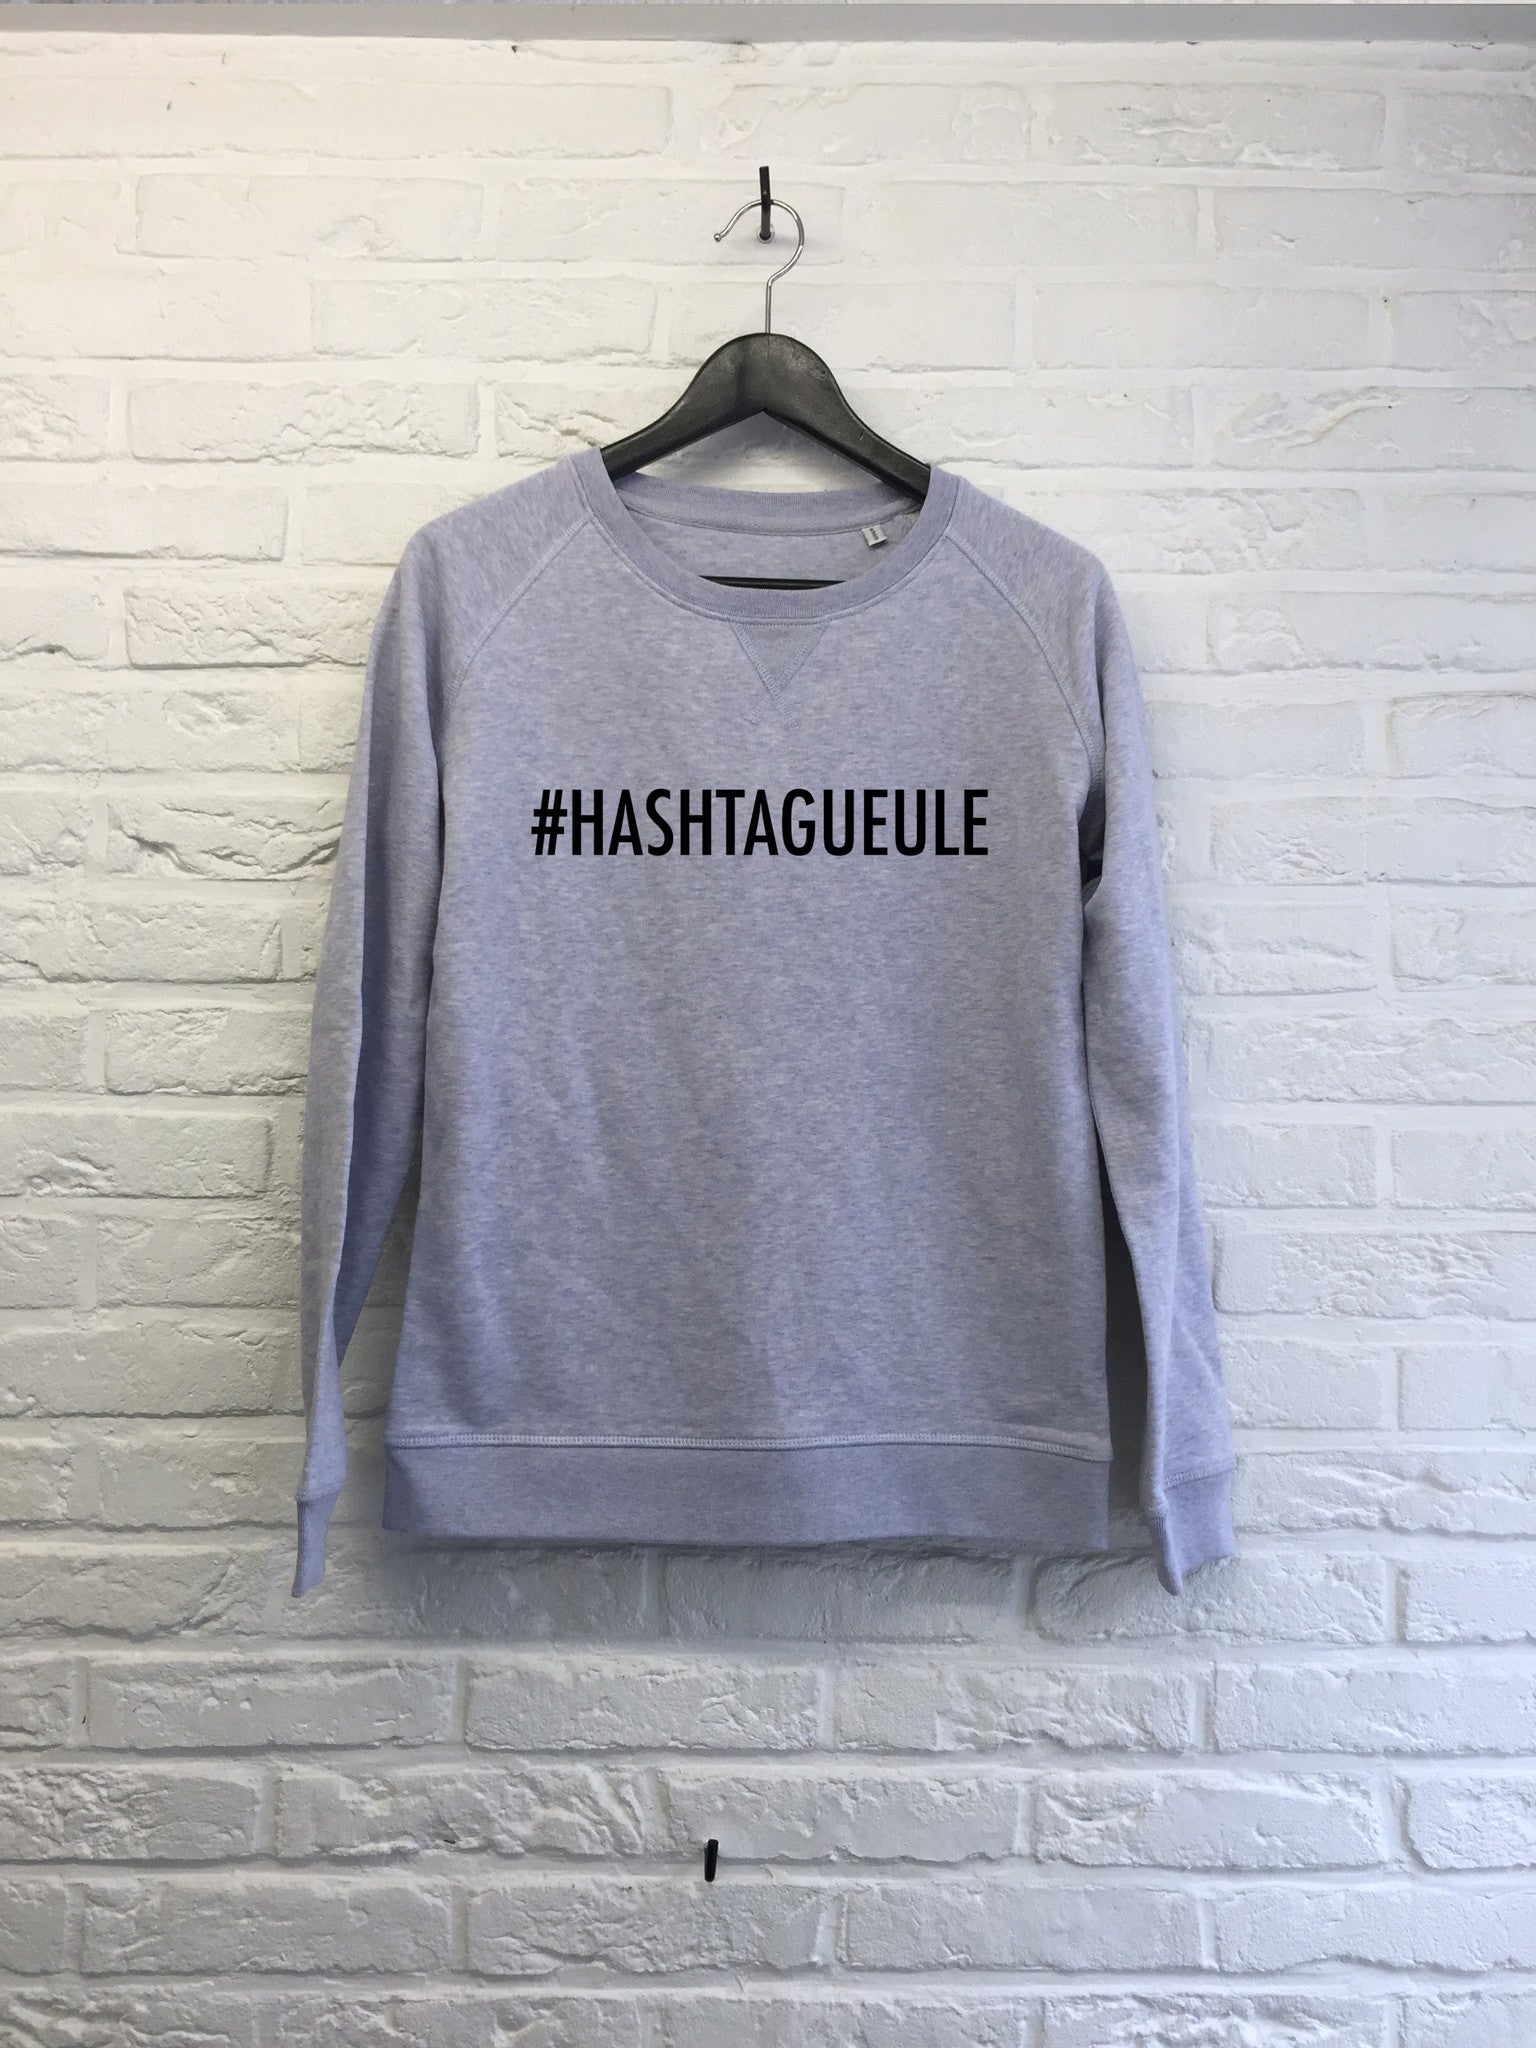 Hashtagueule - Sweat - Femme-Sweat shirts-Atelier Amelot